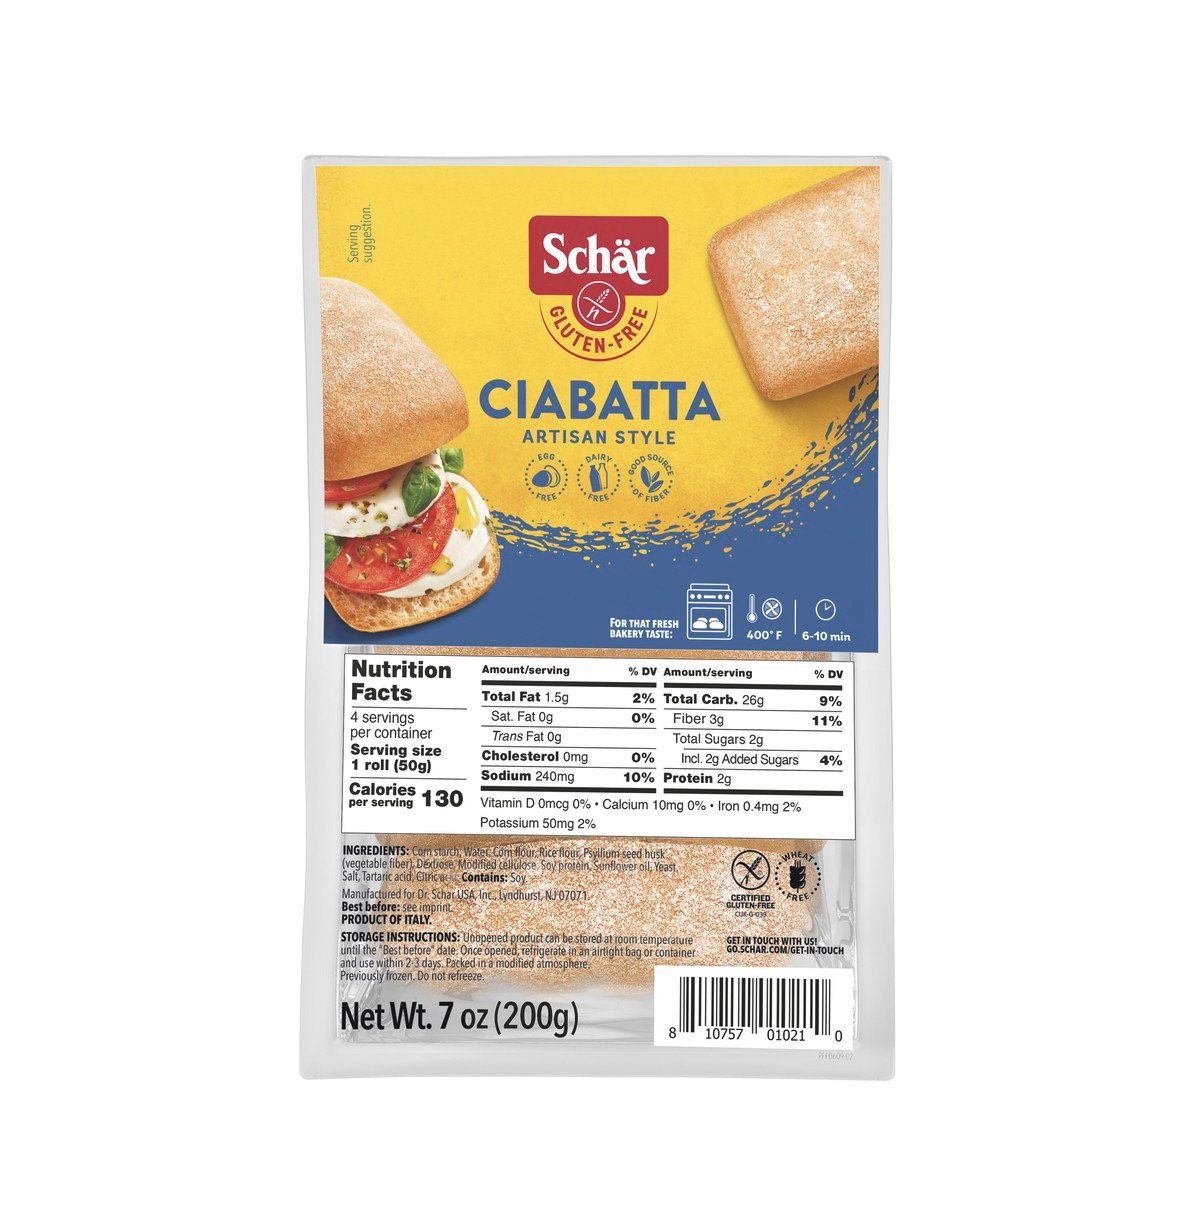 Gf/vg Ciabatta bread